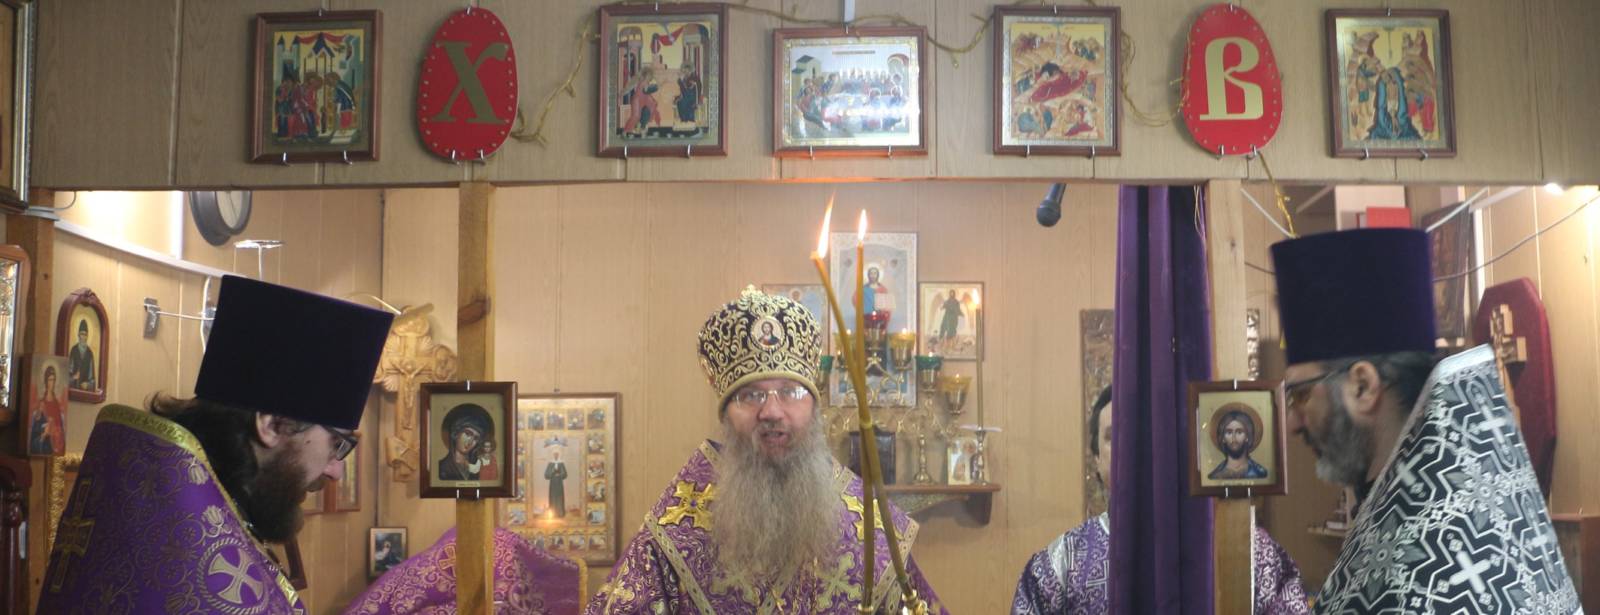 Божественная литургия Преждеосвященных Даров в храме Рождества Иоанна Предтечи.